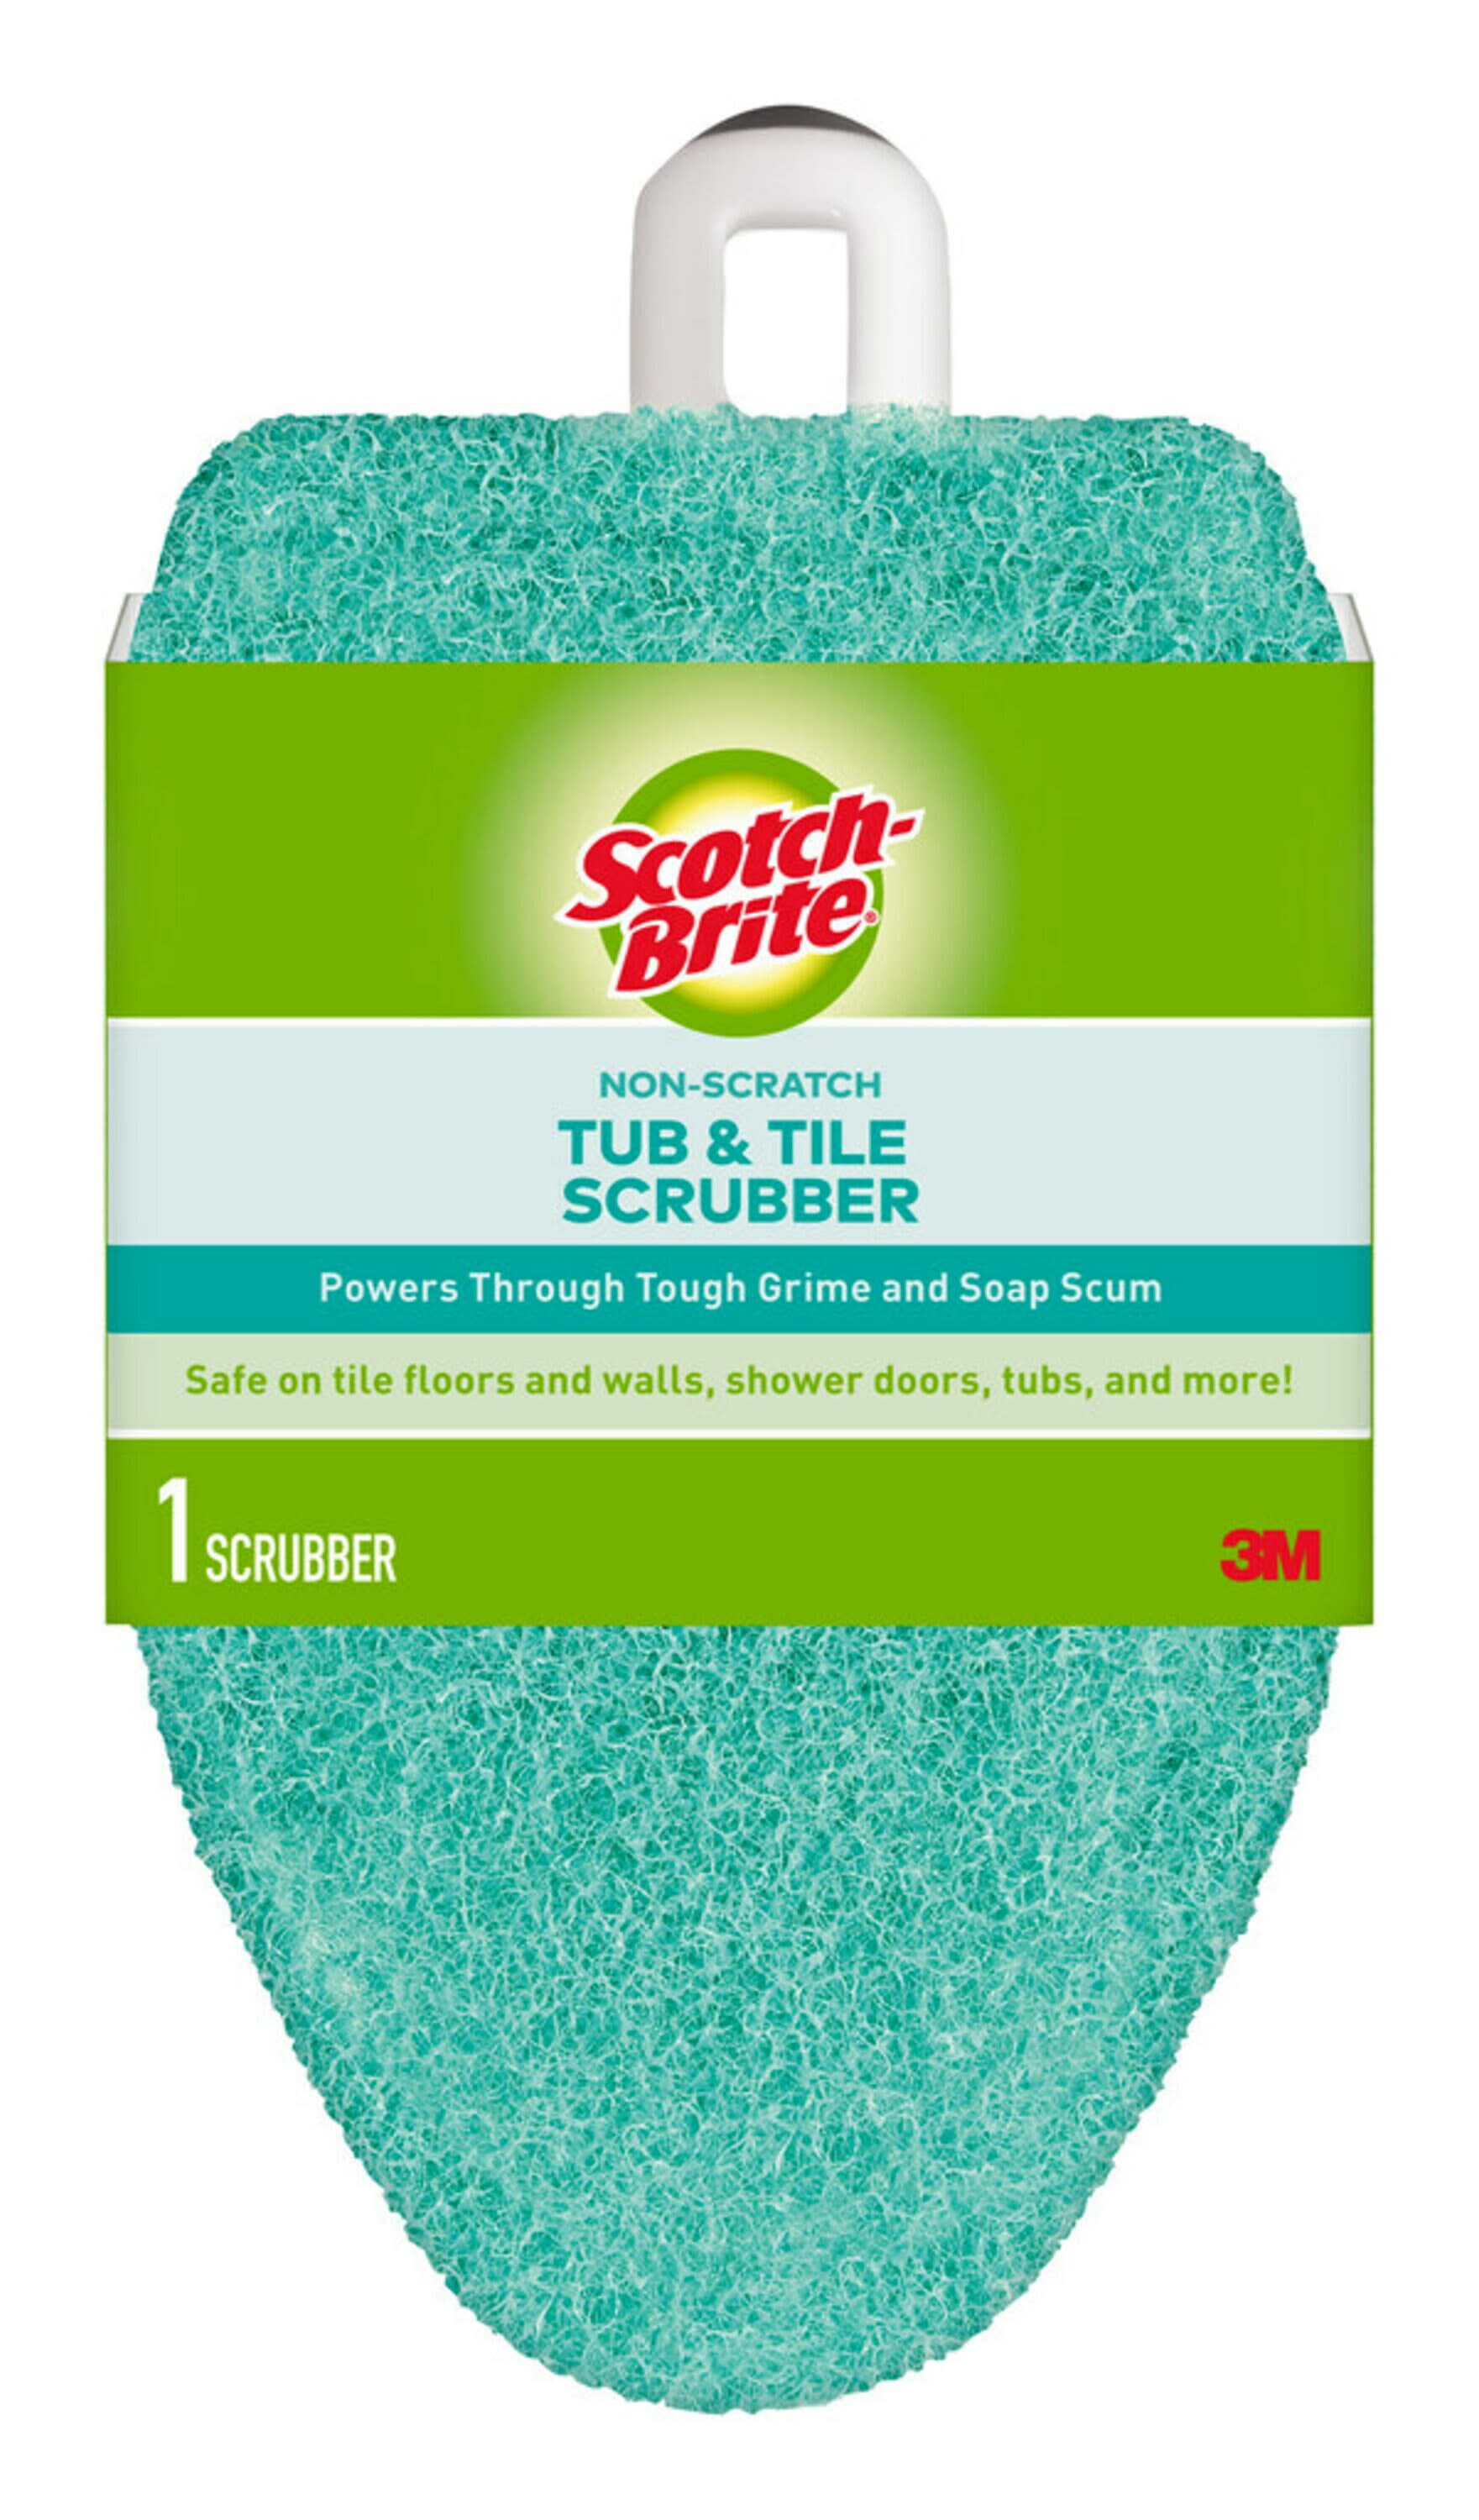 Scotch-Brite 3M Scrubber, Tub & Tile, Non-Scratch